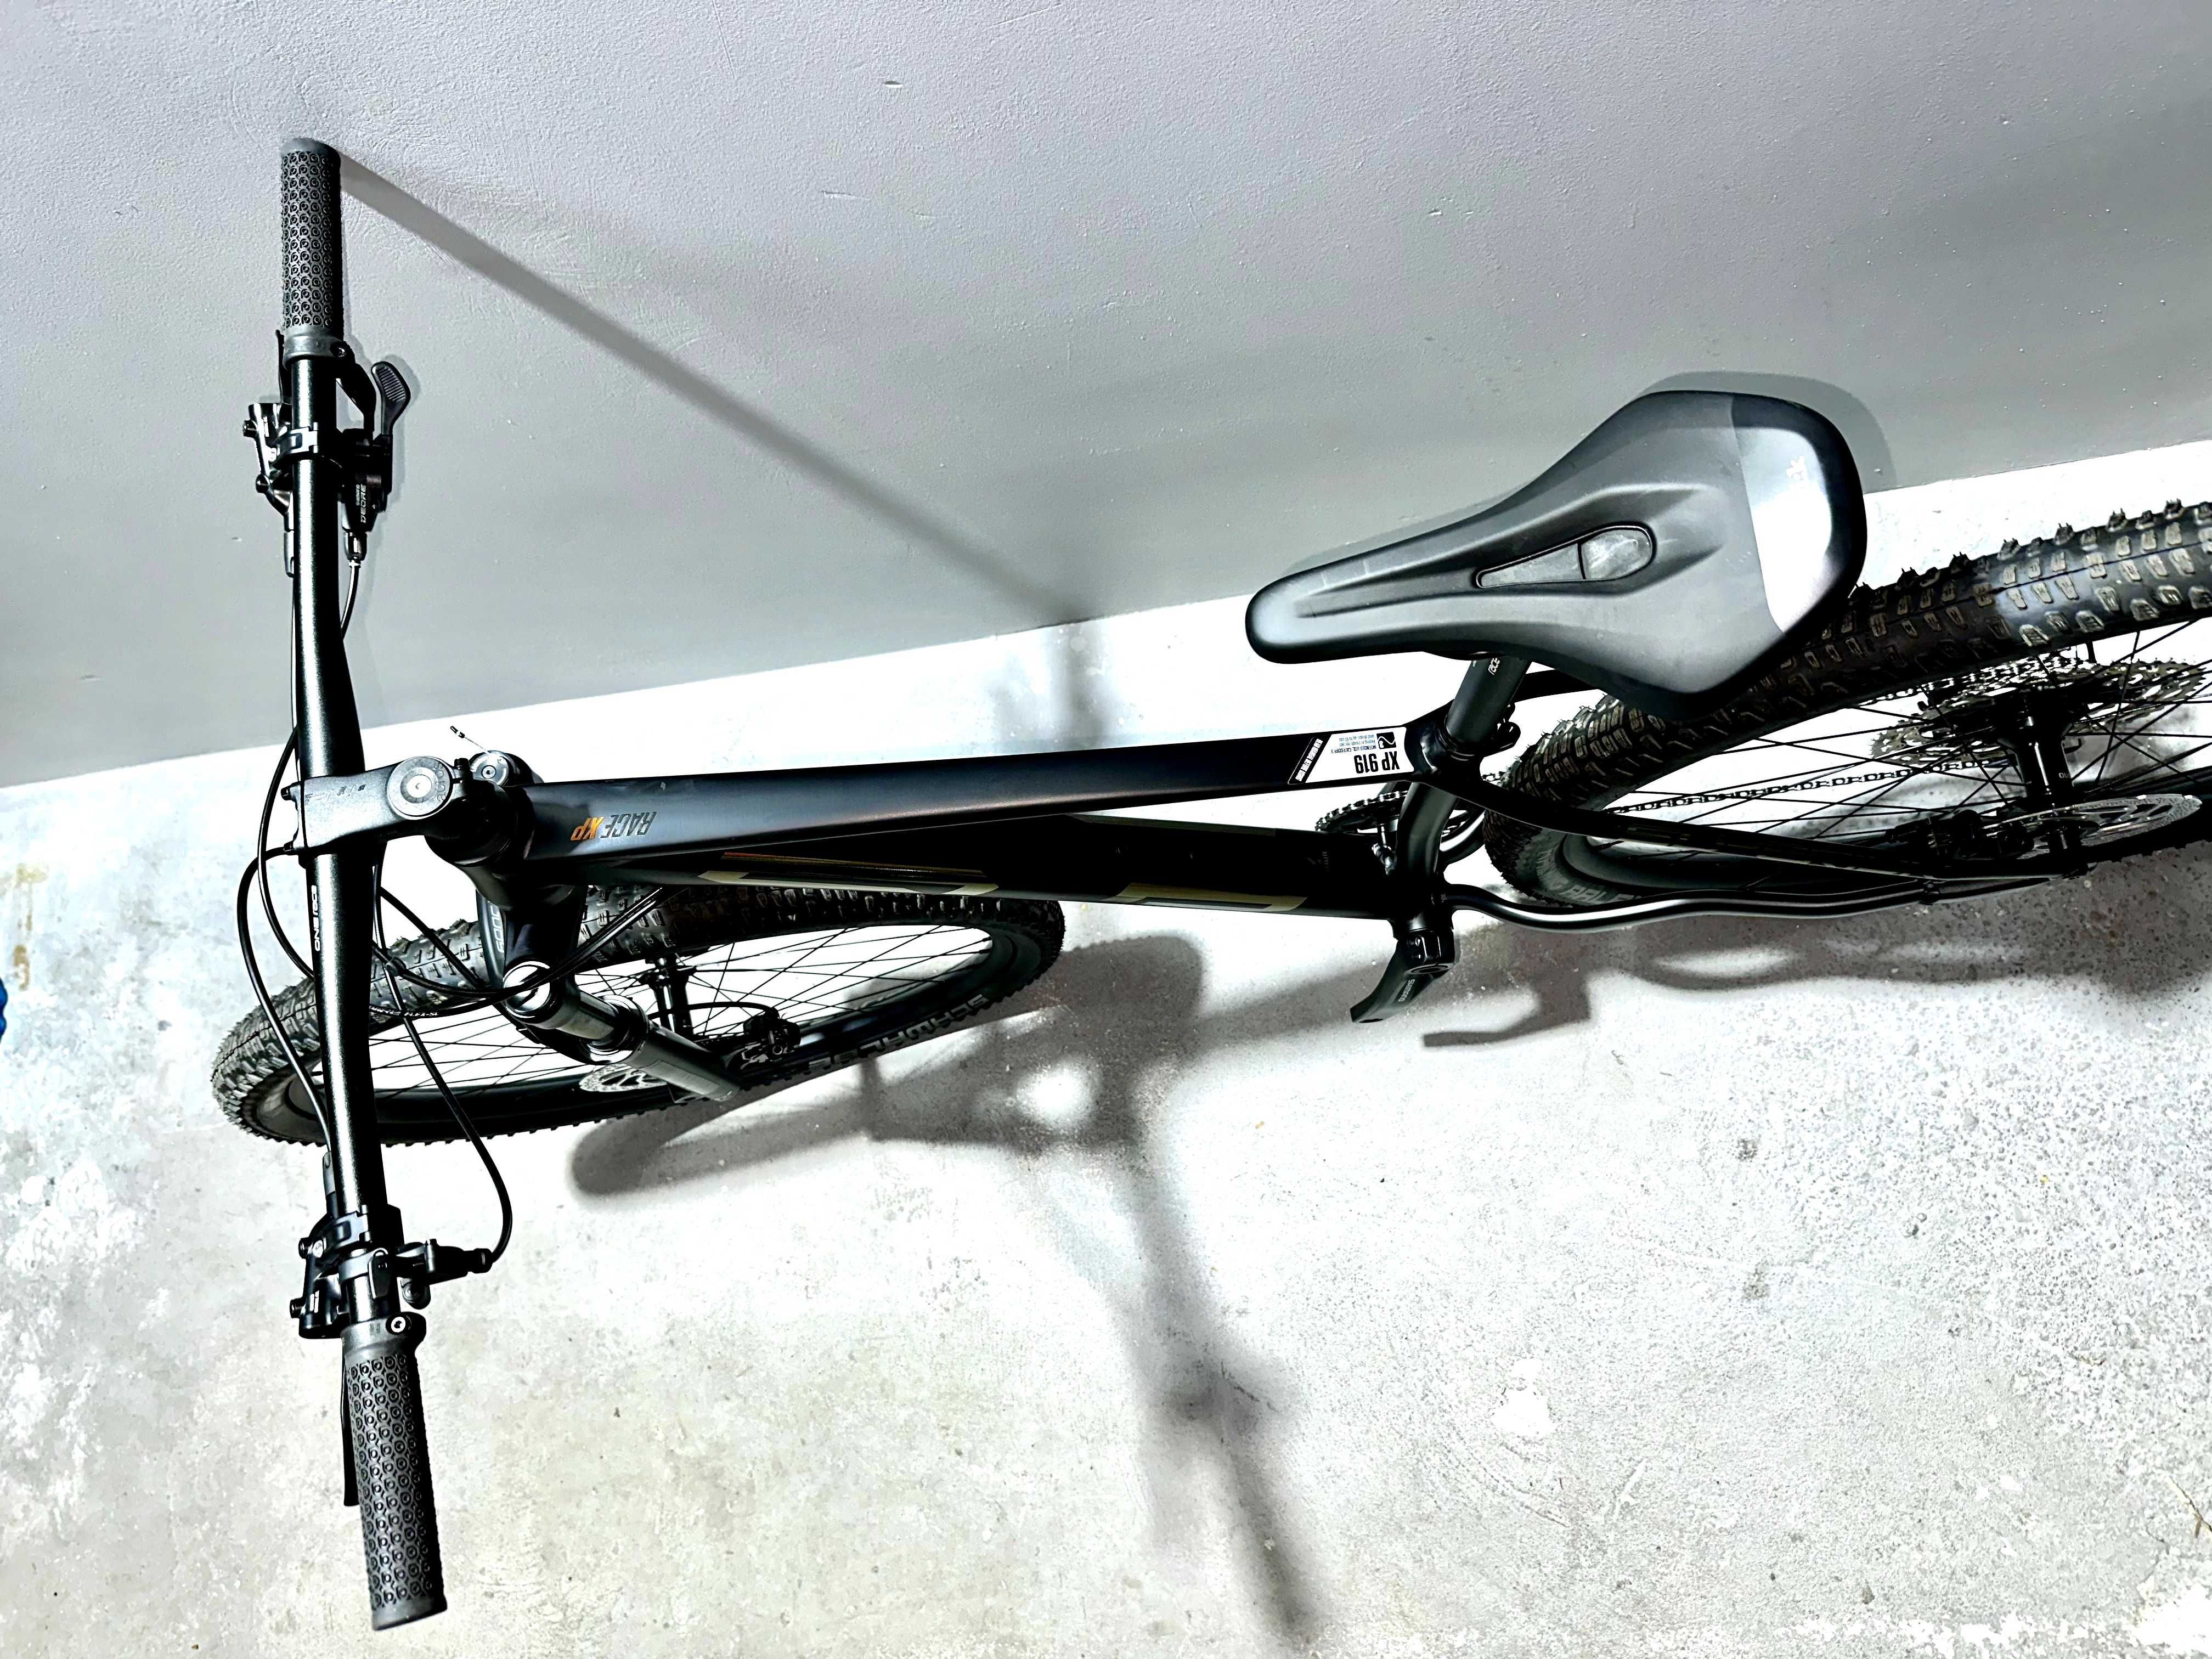 OKAZJA nowy rower 29" MTB SUPERIOR XP 919 r. S z 6699 zł kaseta 12 rz